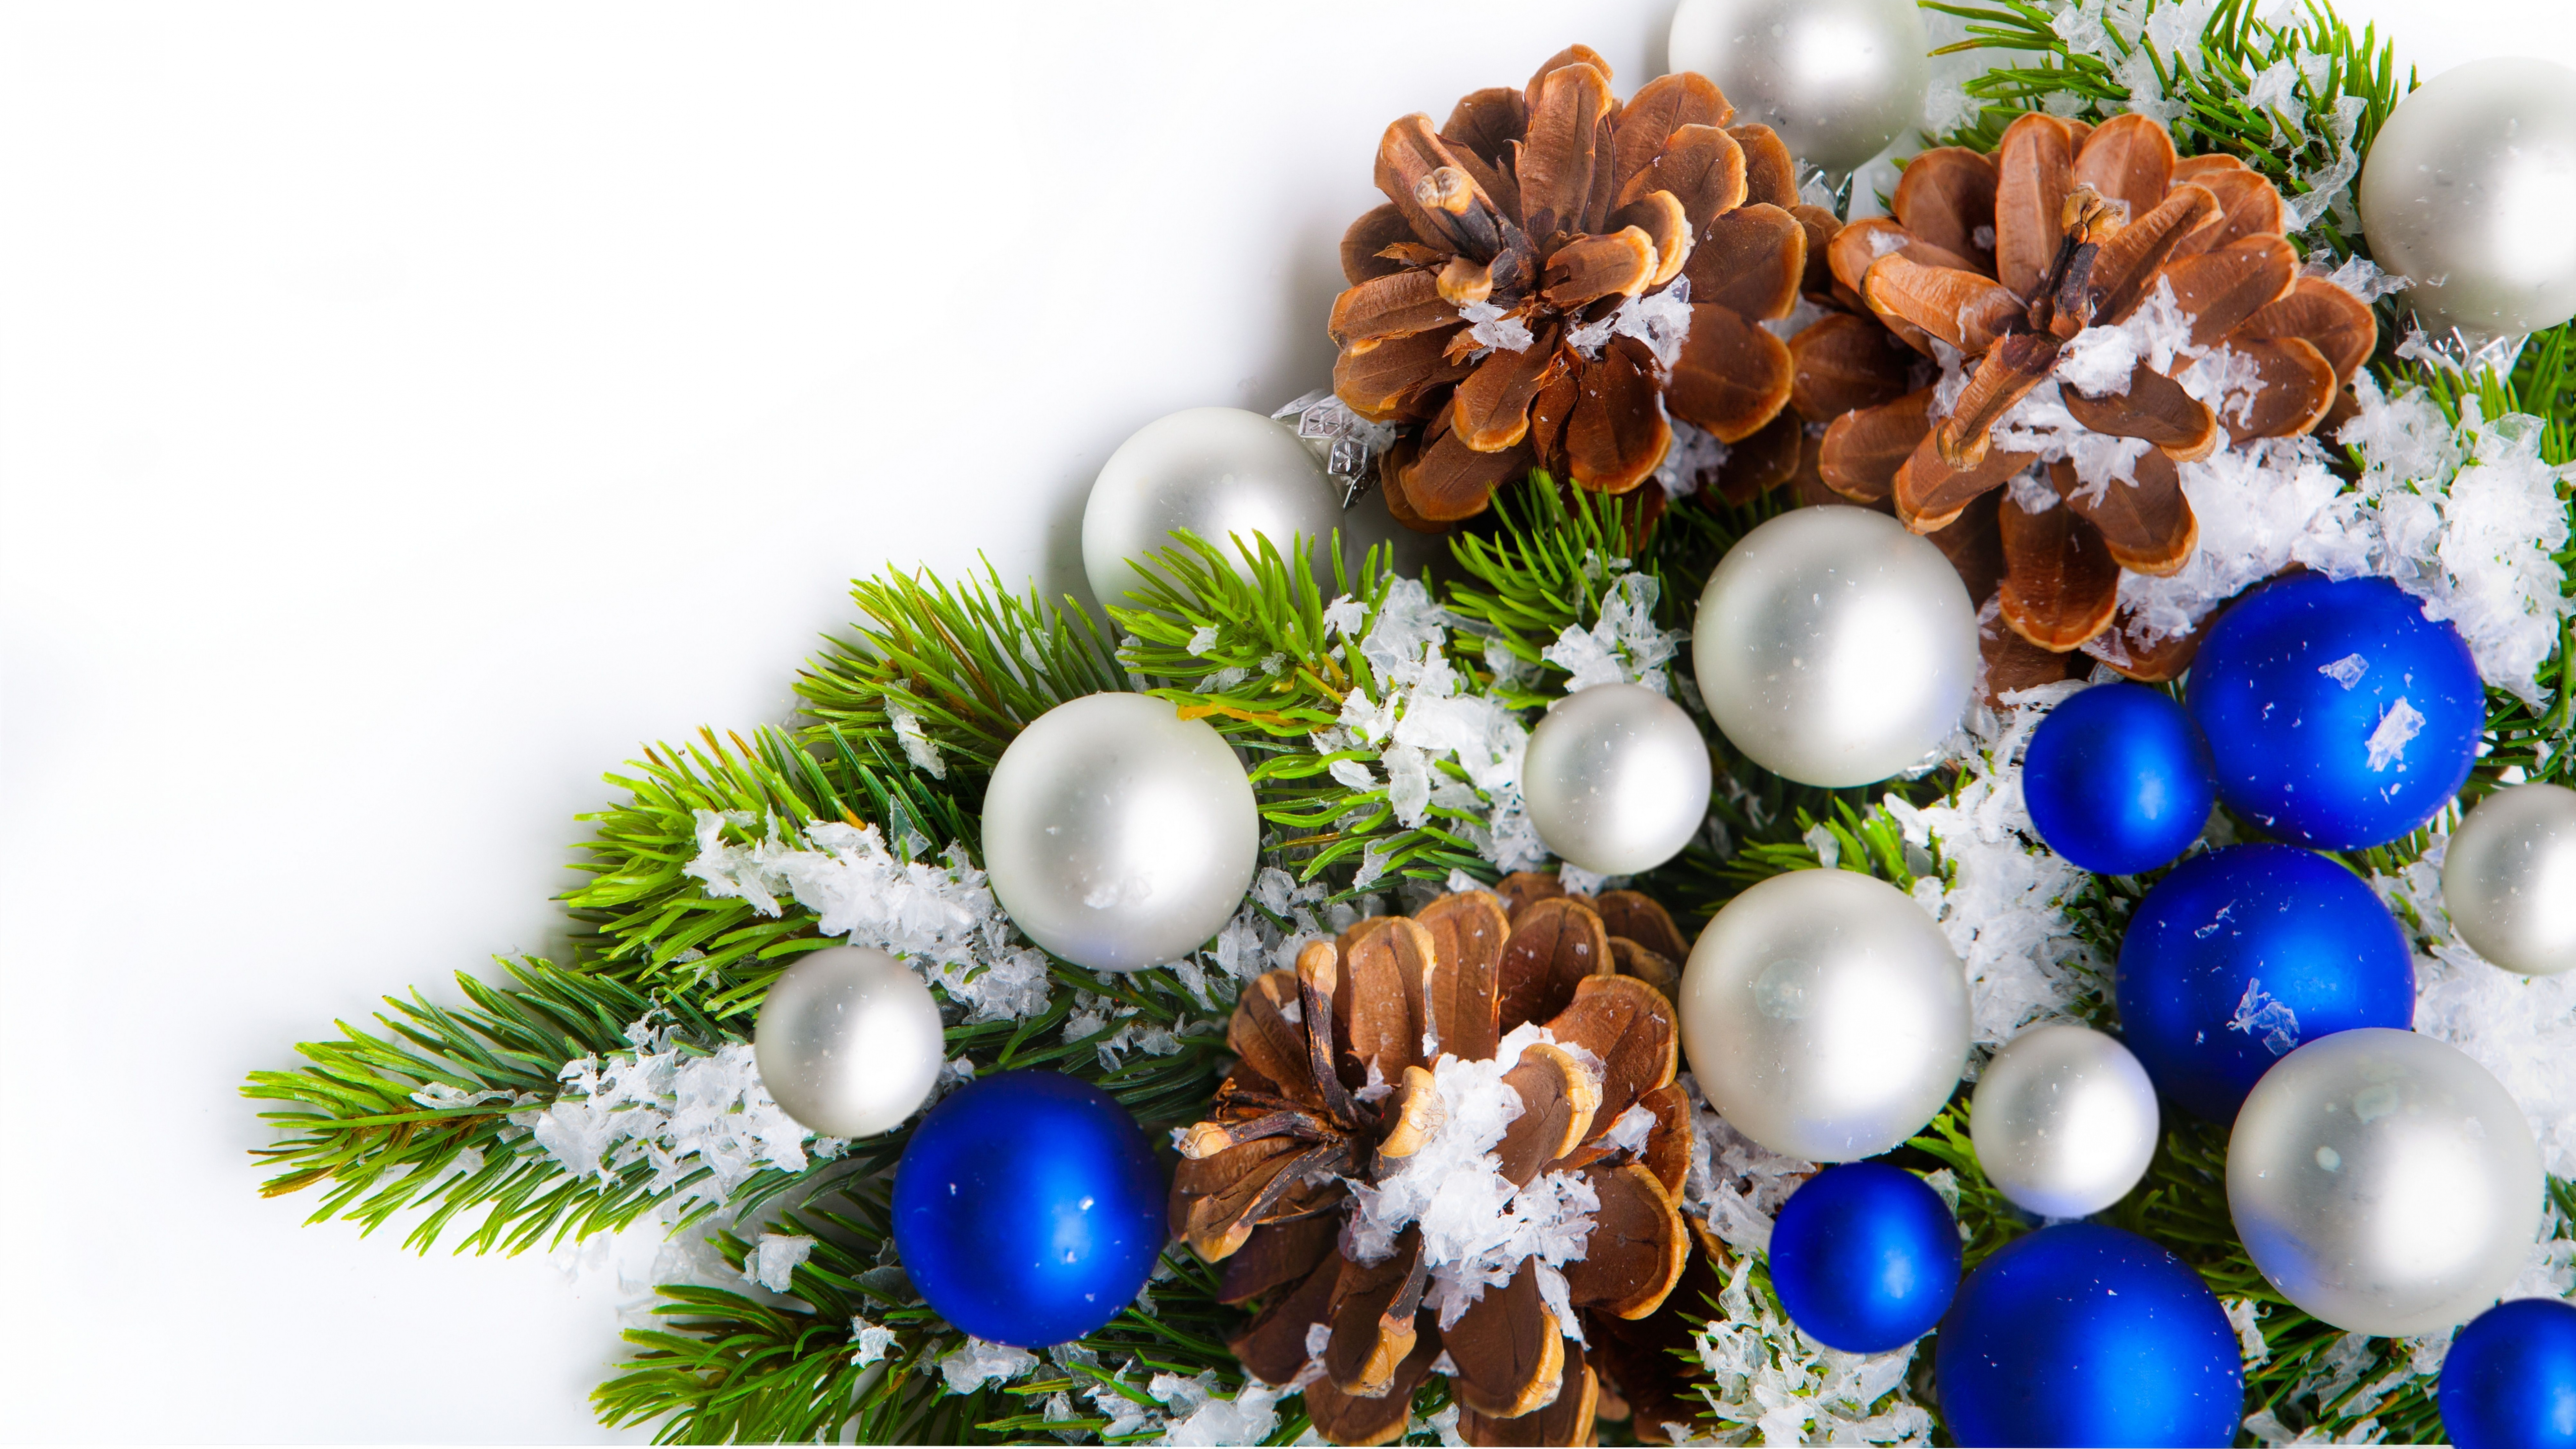 Weihnachten, Neujahr, Weihnachtsdekoration, Christmas Ornament, Baum. Wallpaper in 7680x4320 Resolution